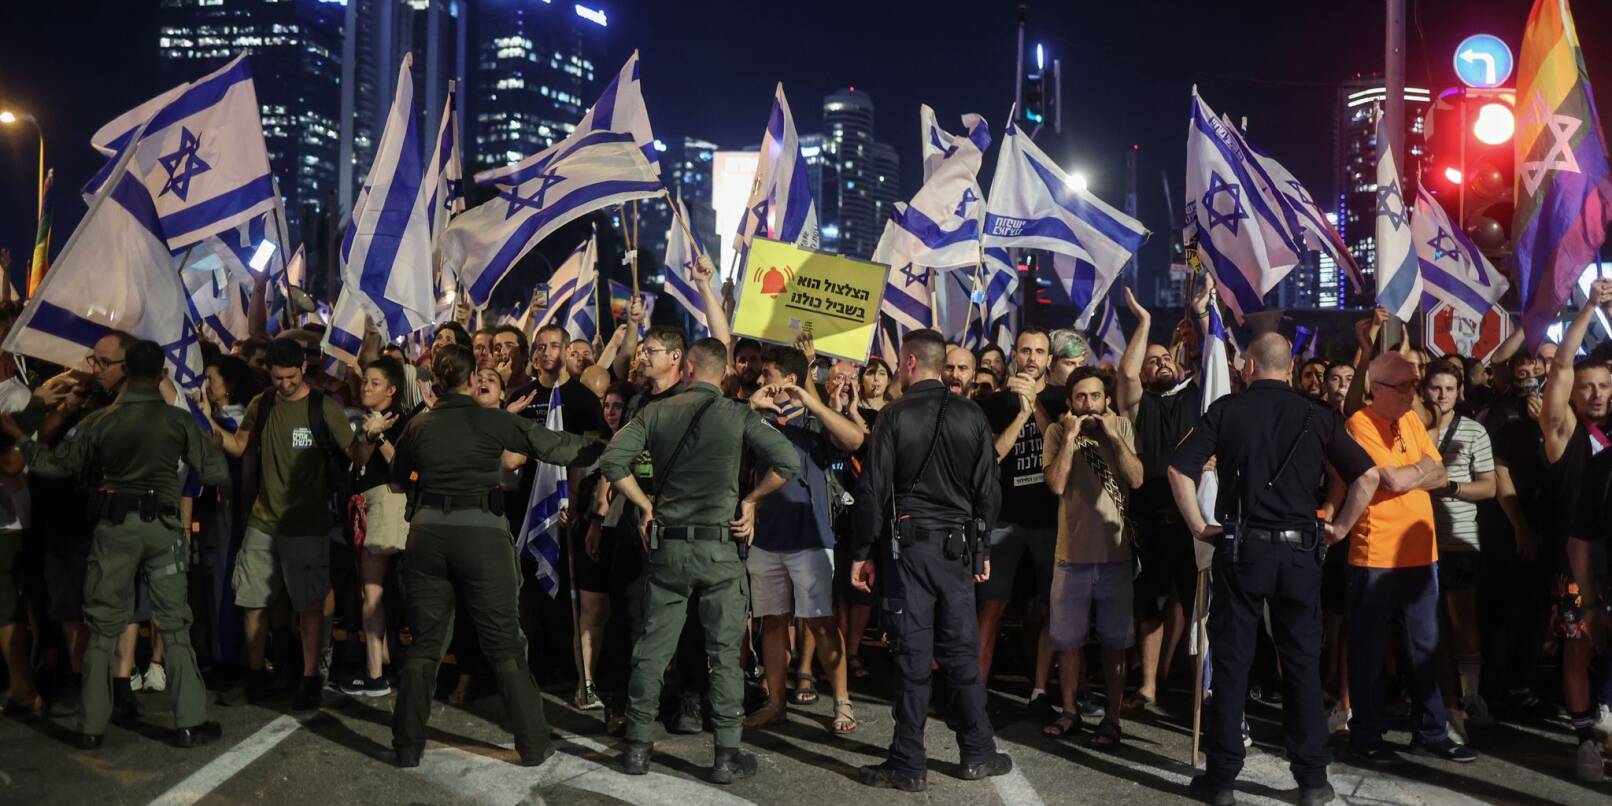 Polizisten stehen vor Demonstranten während eines Protests gegen die israelische Regierung.